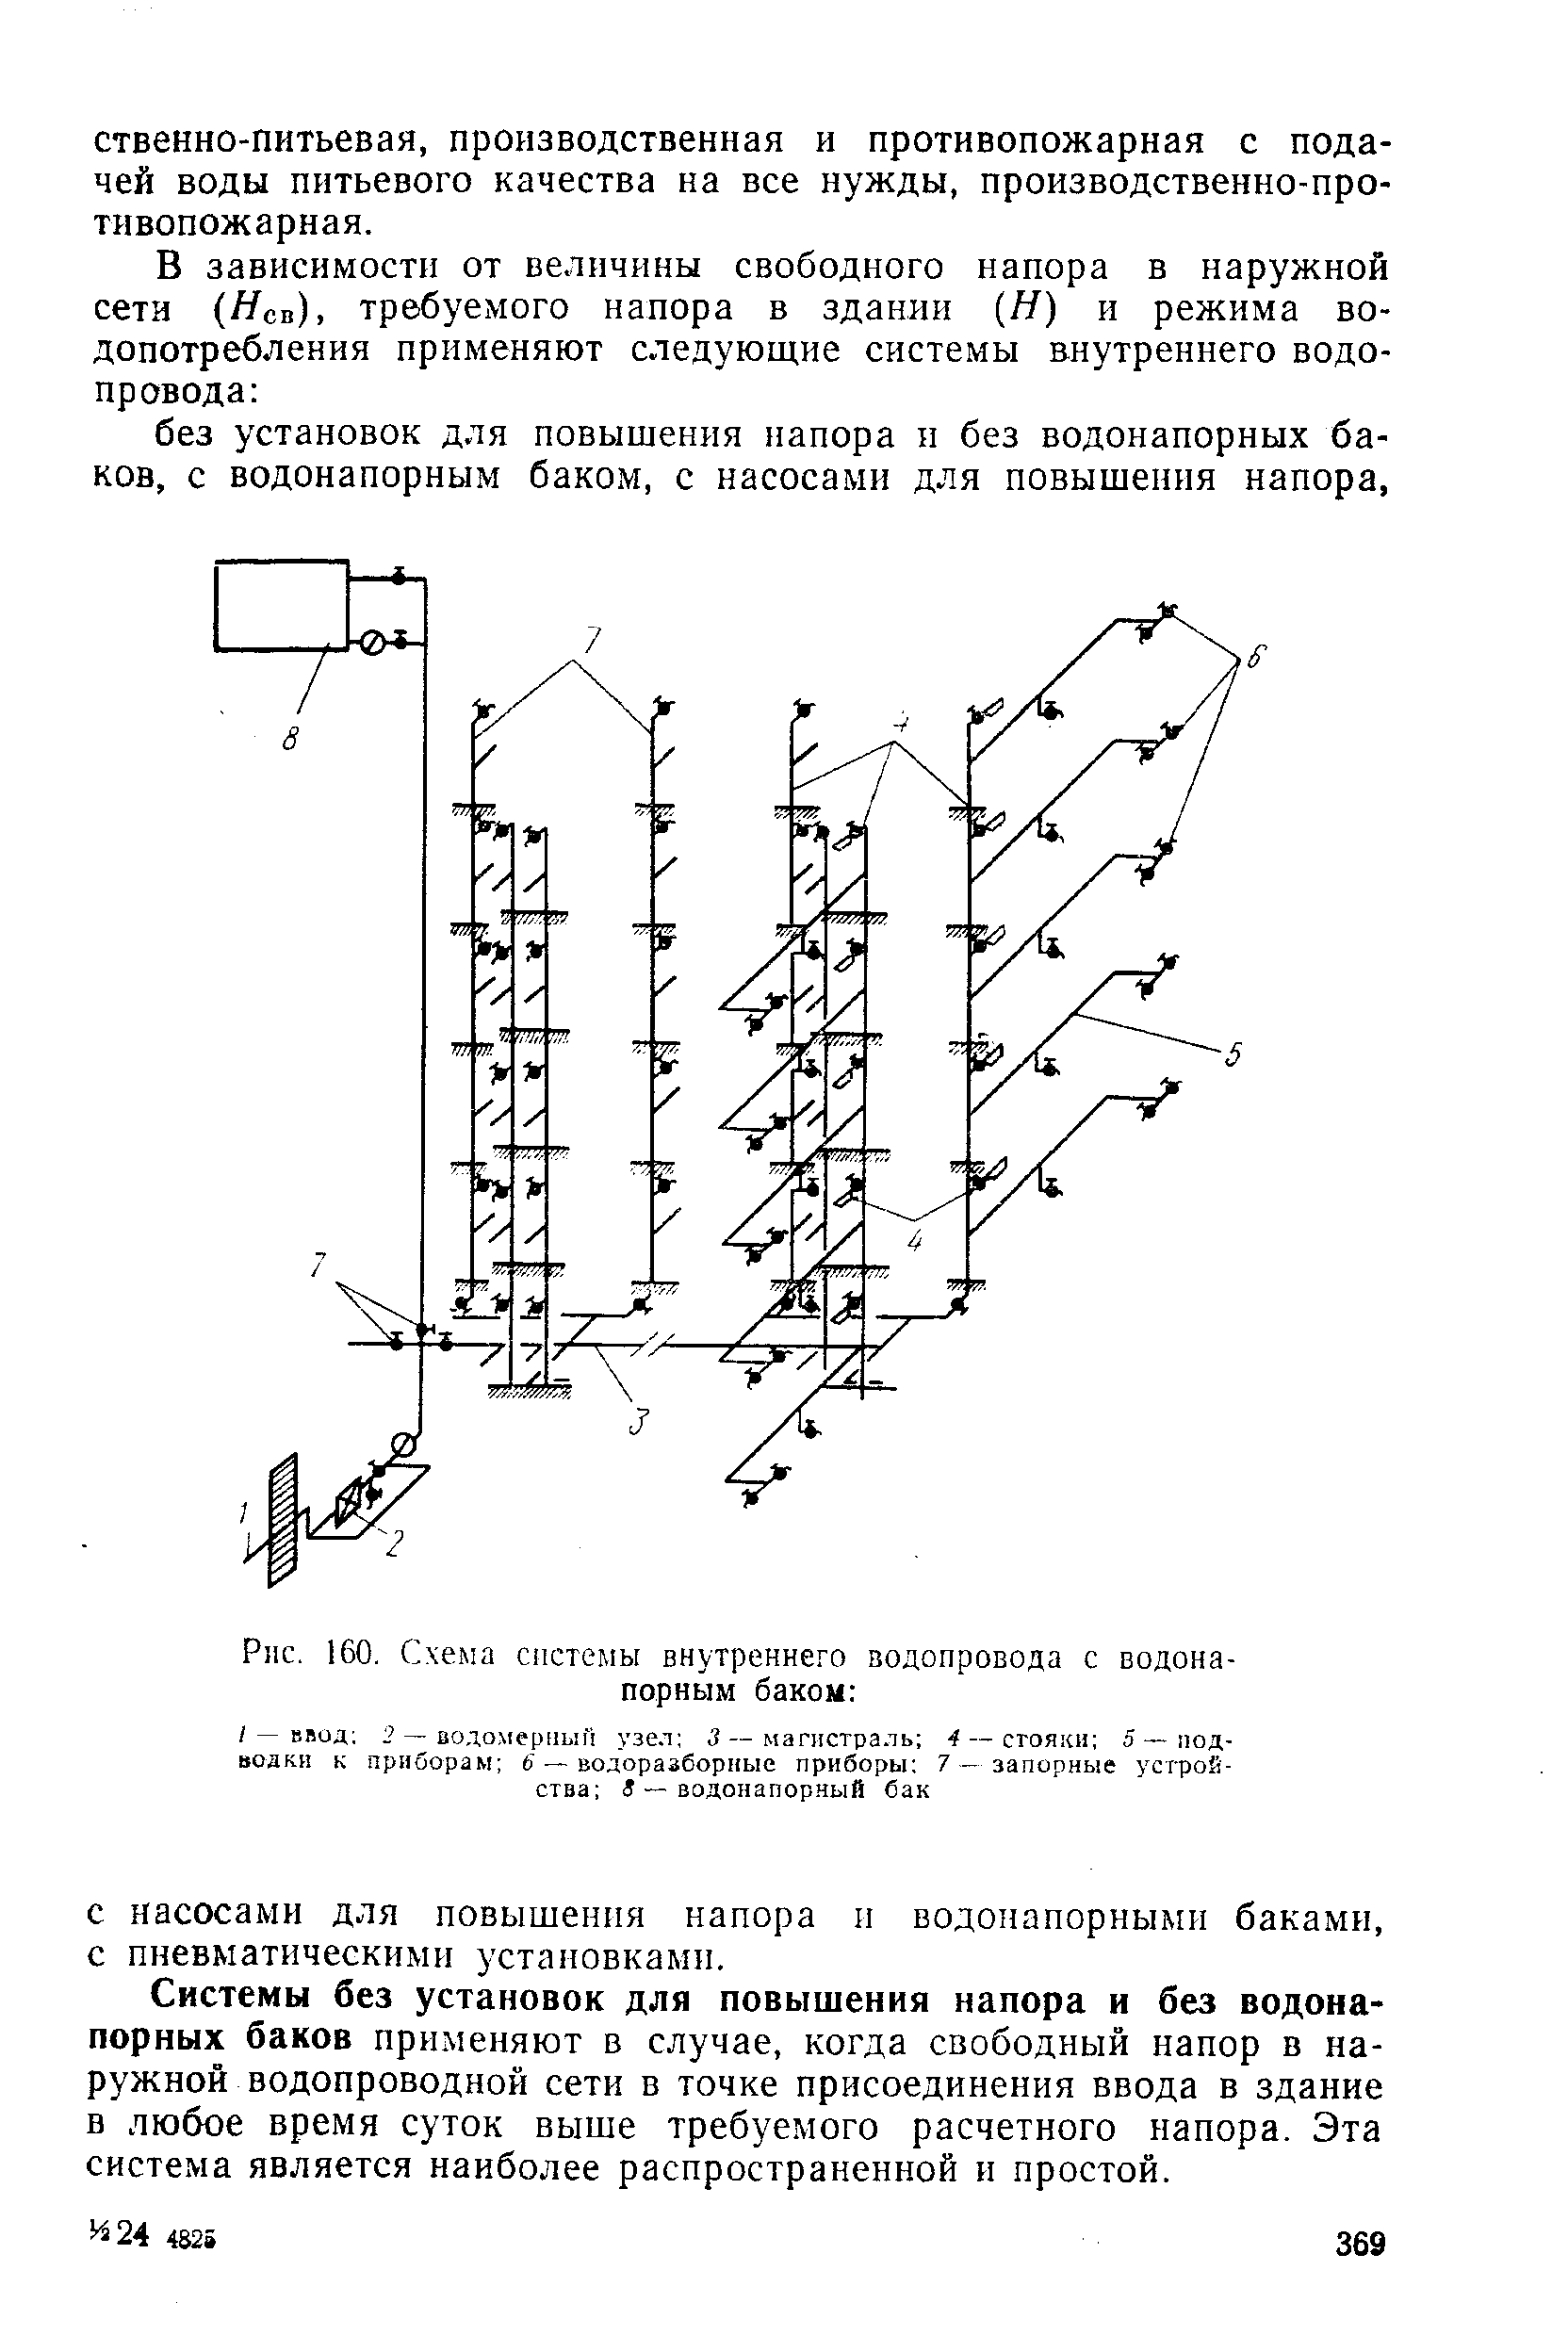 Рис. 160. Схема системы внутреннего водопровода с водонапорным баком 
